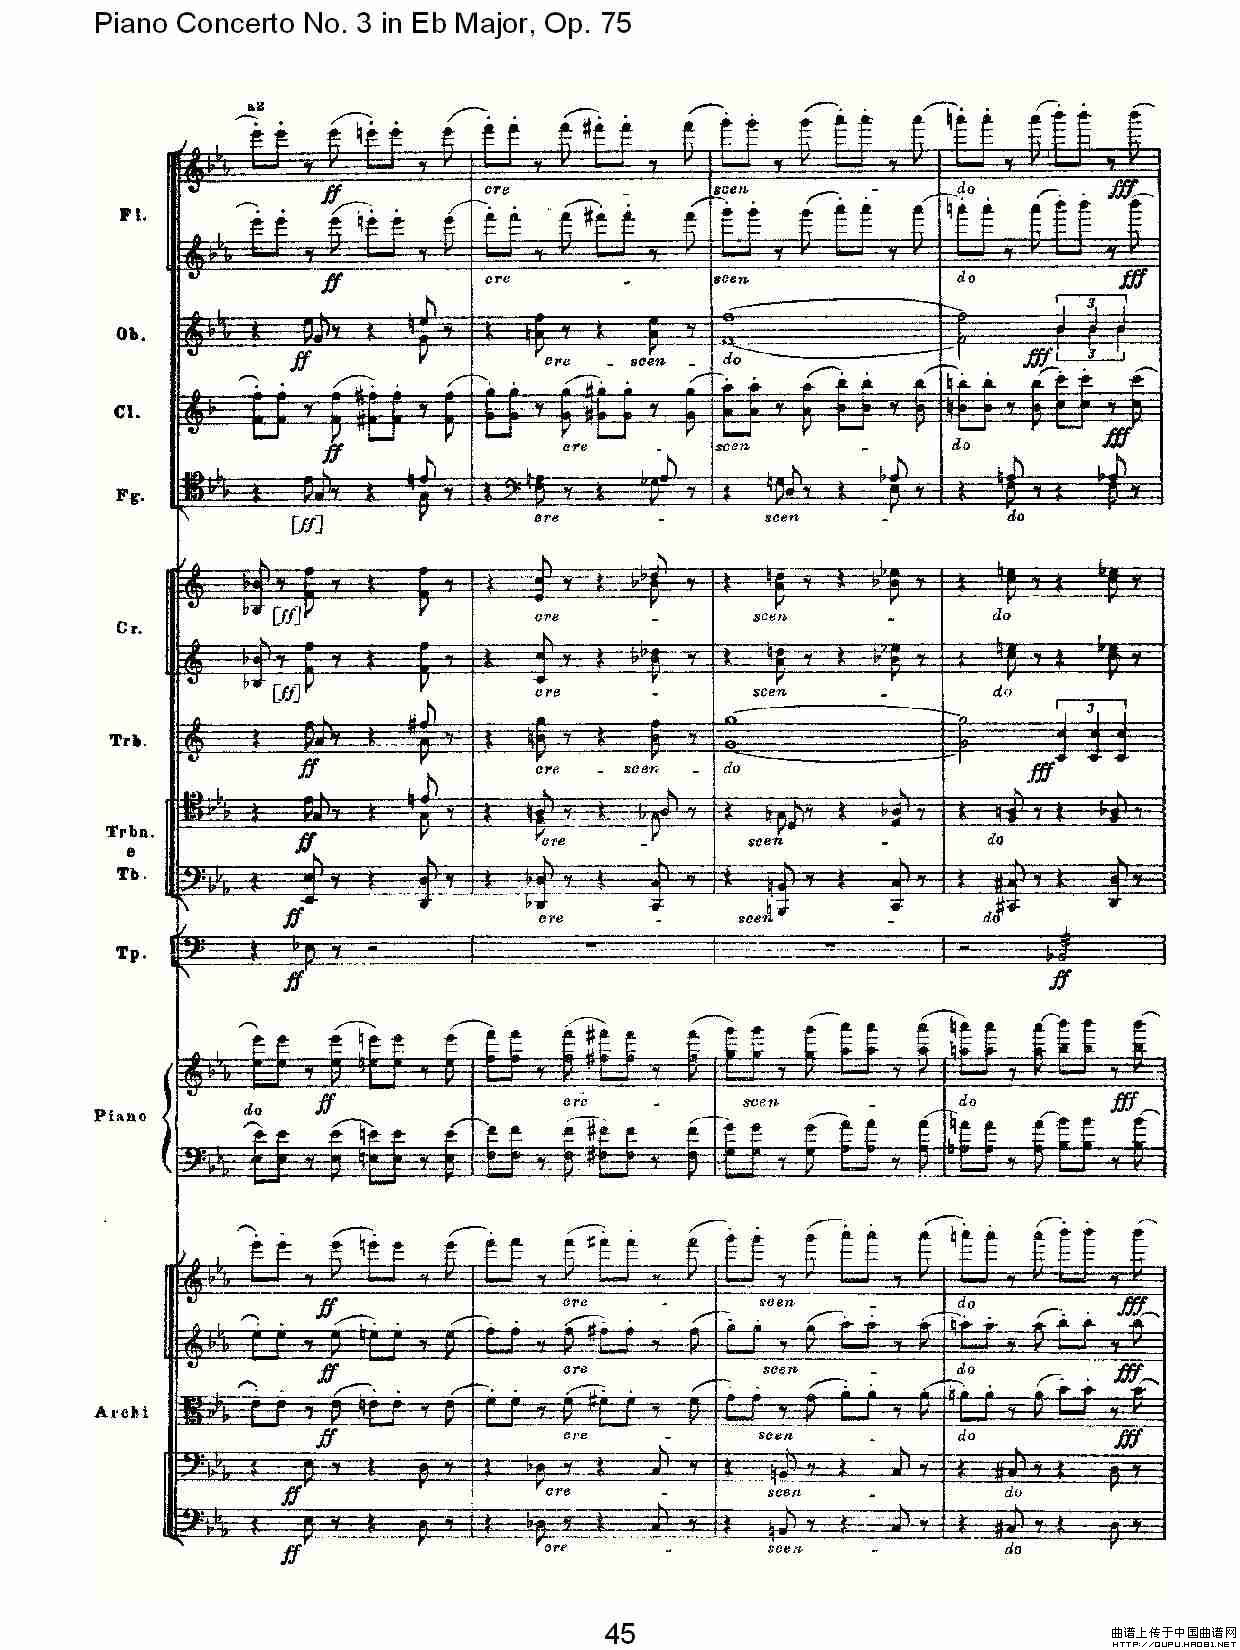 Piano Concerto No.3 in Eb Major, Op.75（Eb大调第三钢琴协奏）(1)_原文件名：Piano Concerto No.3 in Eb Major, Op.7515.jpg